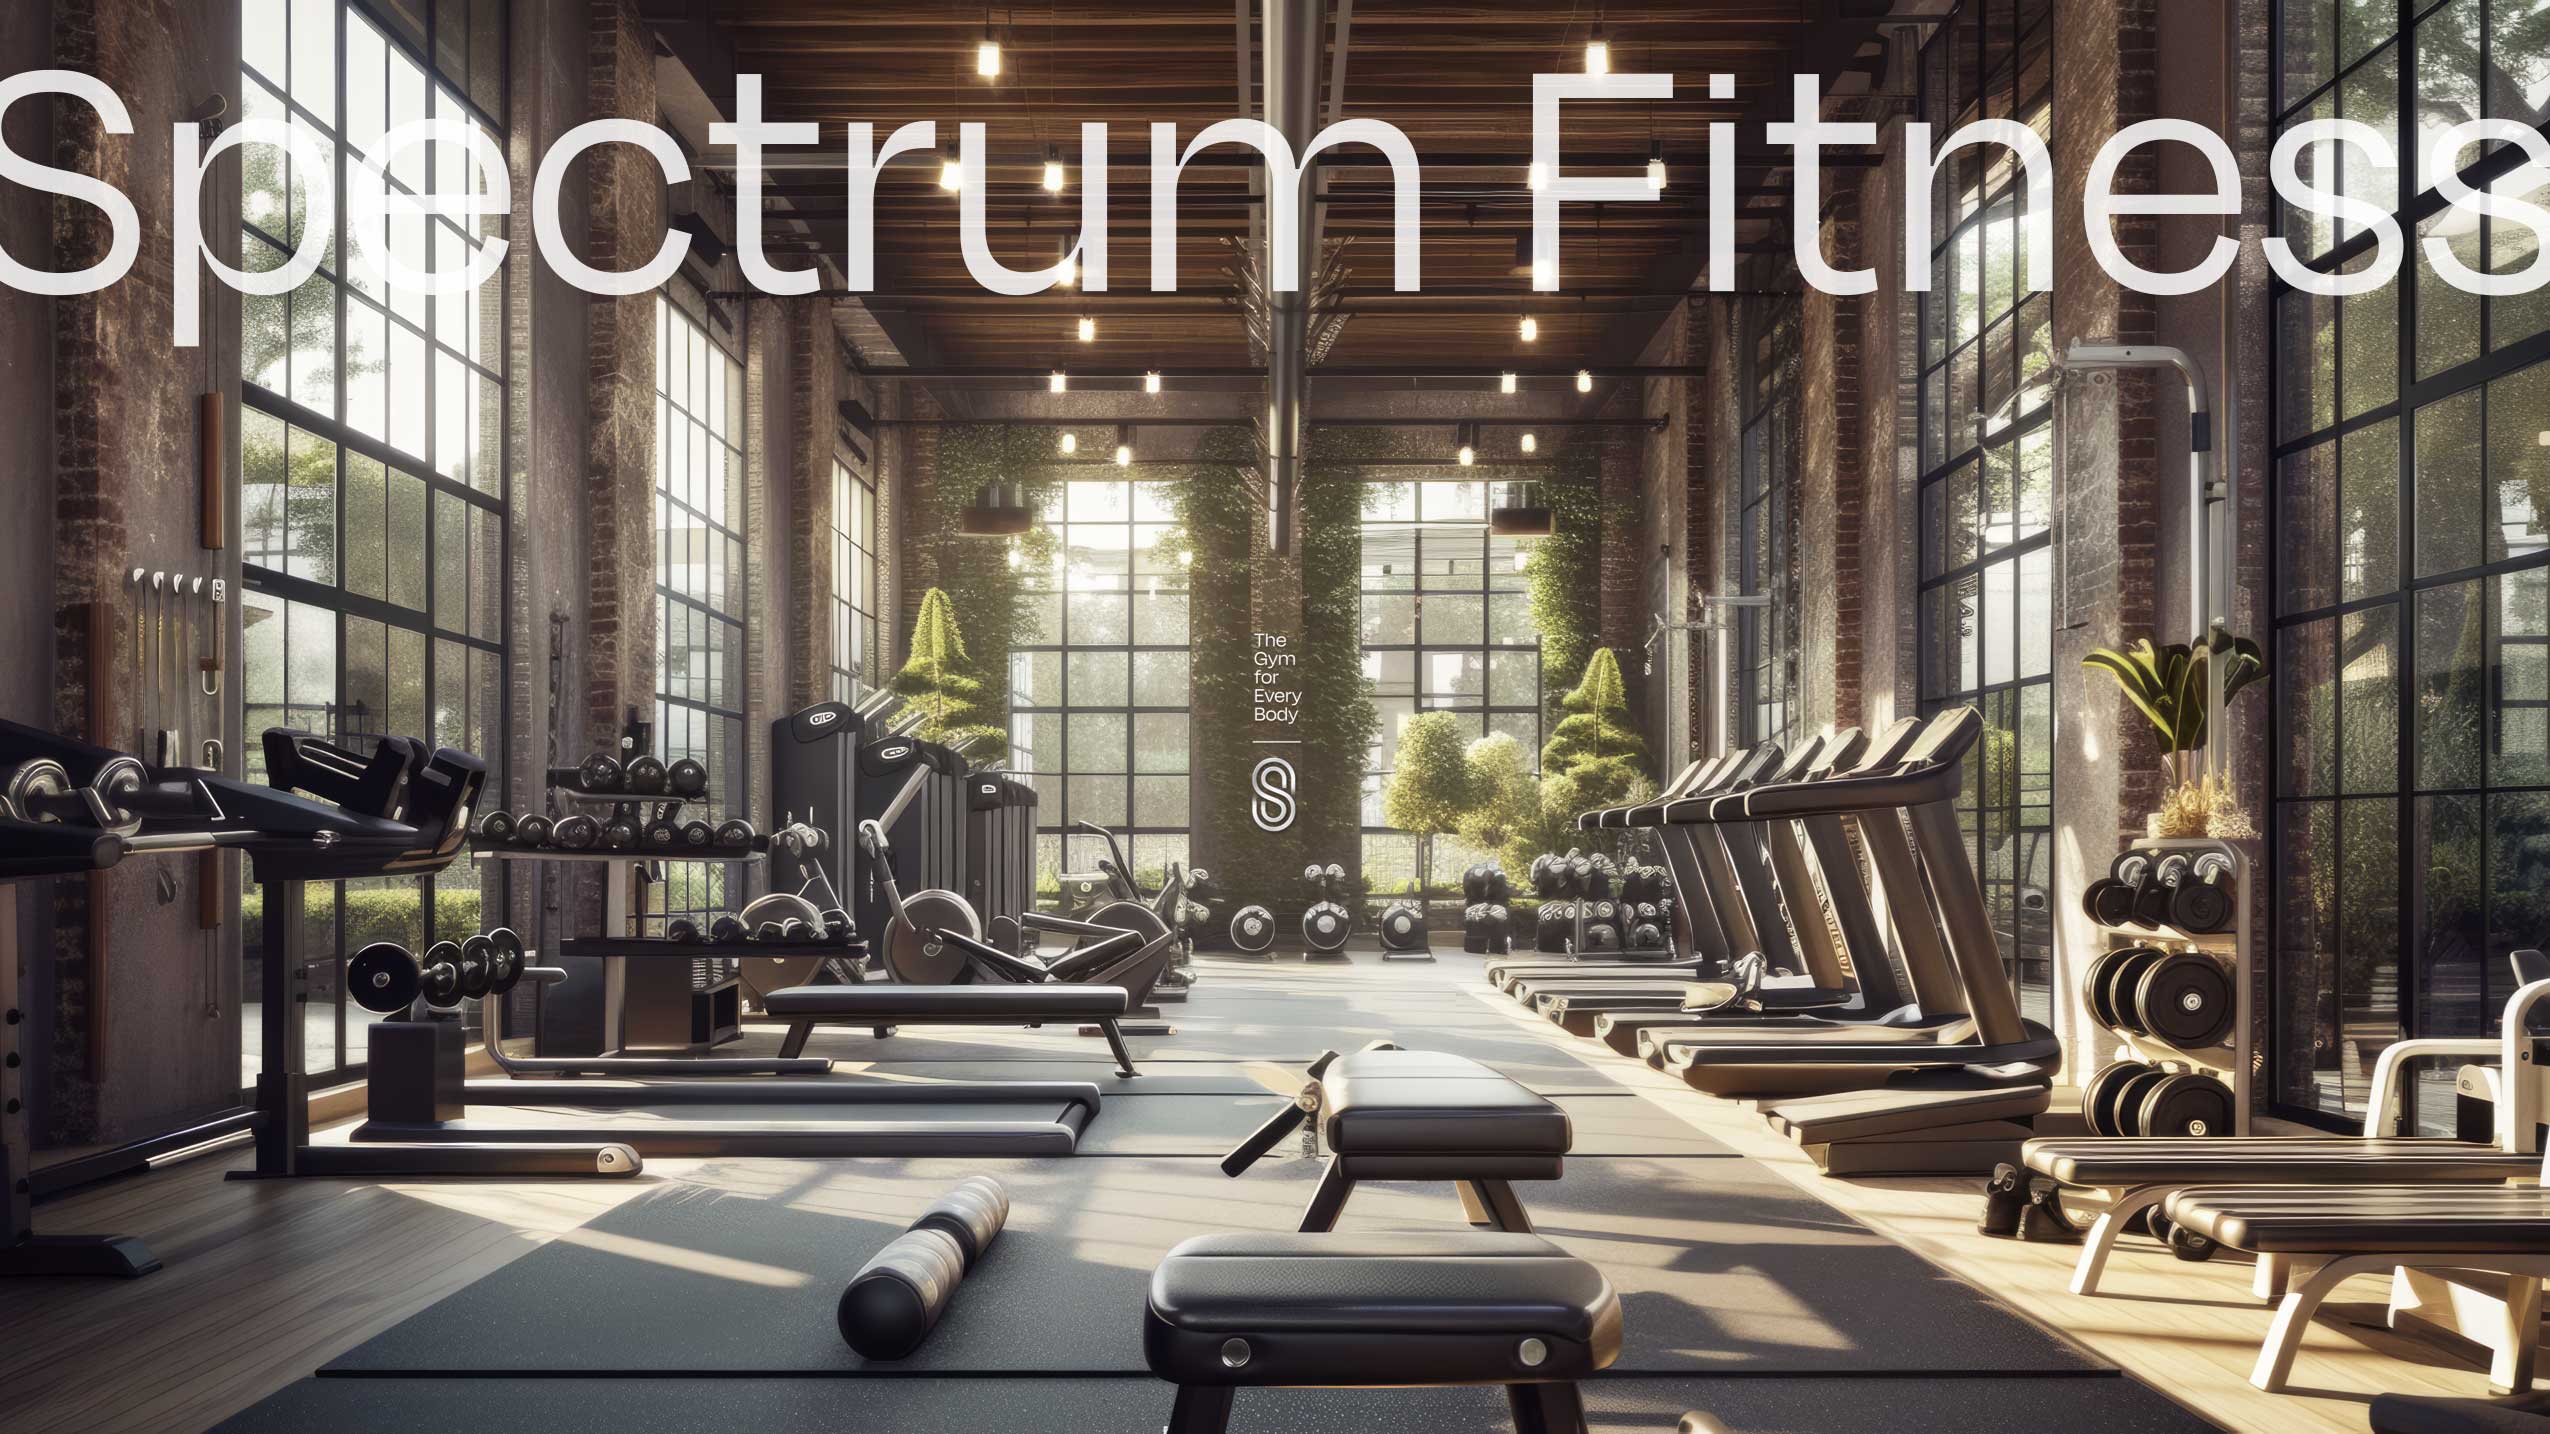 Spectrum-Fitness_Image_1.001